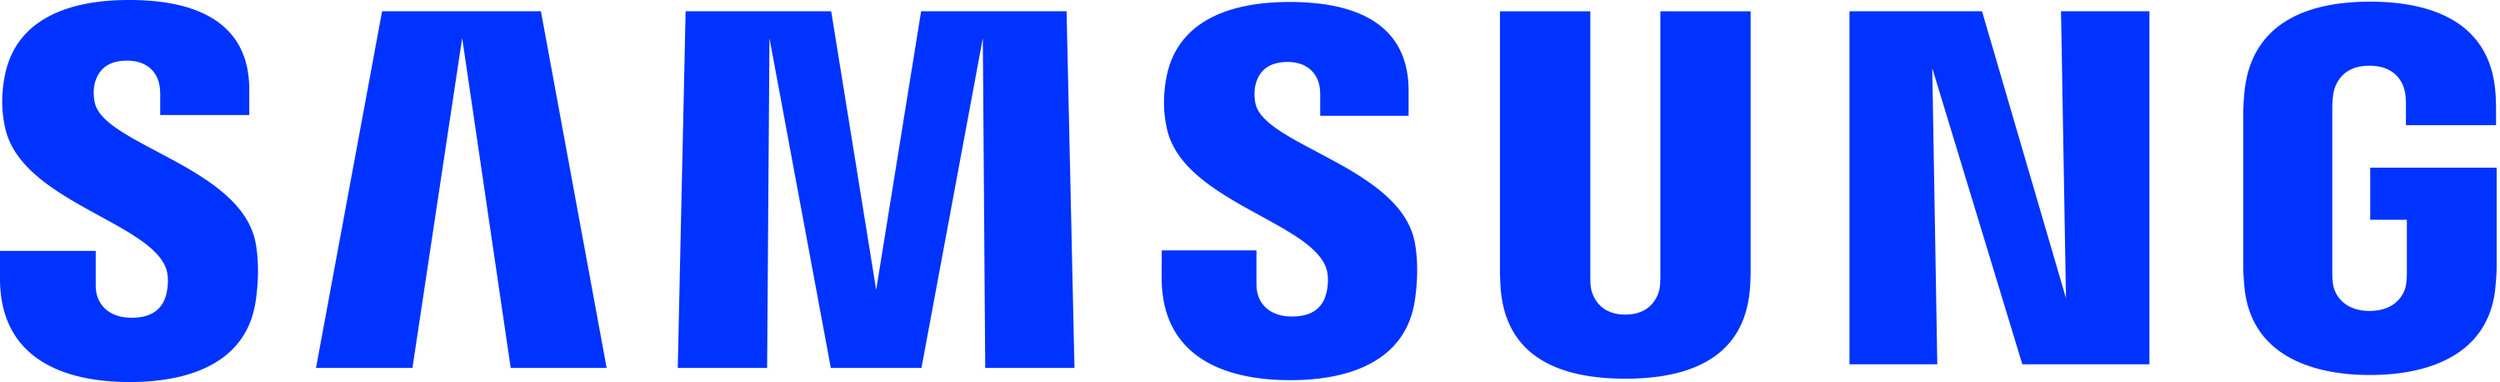 Samsung_Logo_Lettermark_BLUE.JPG